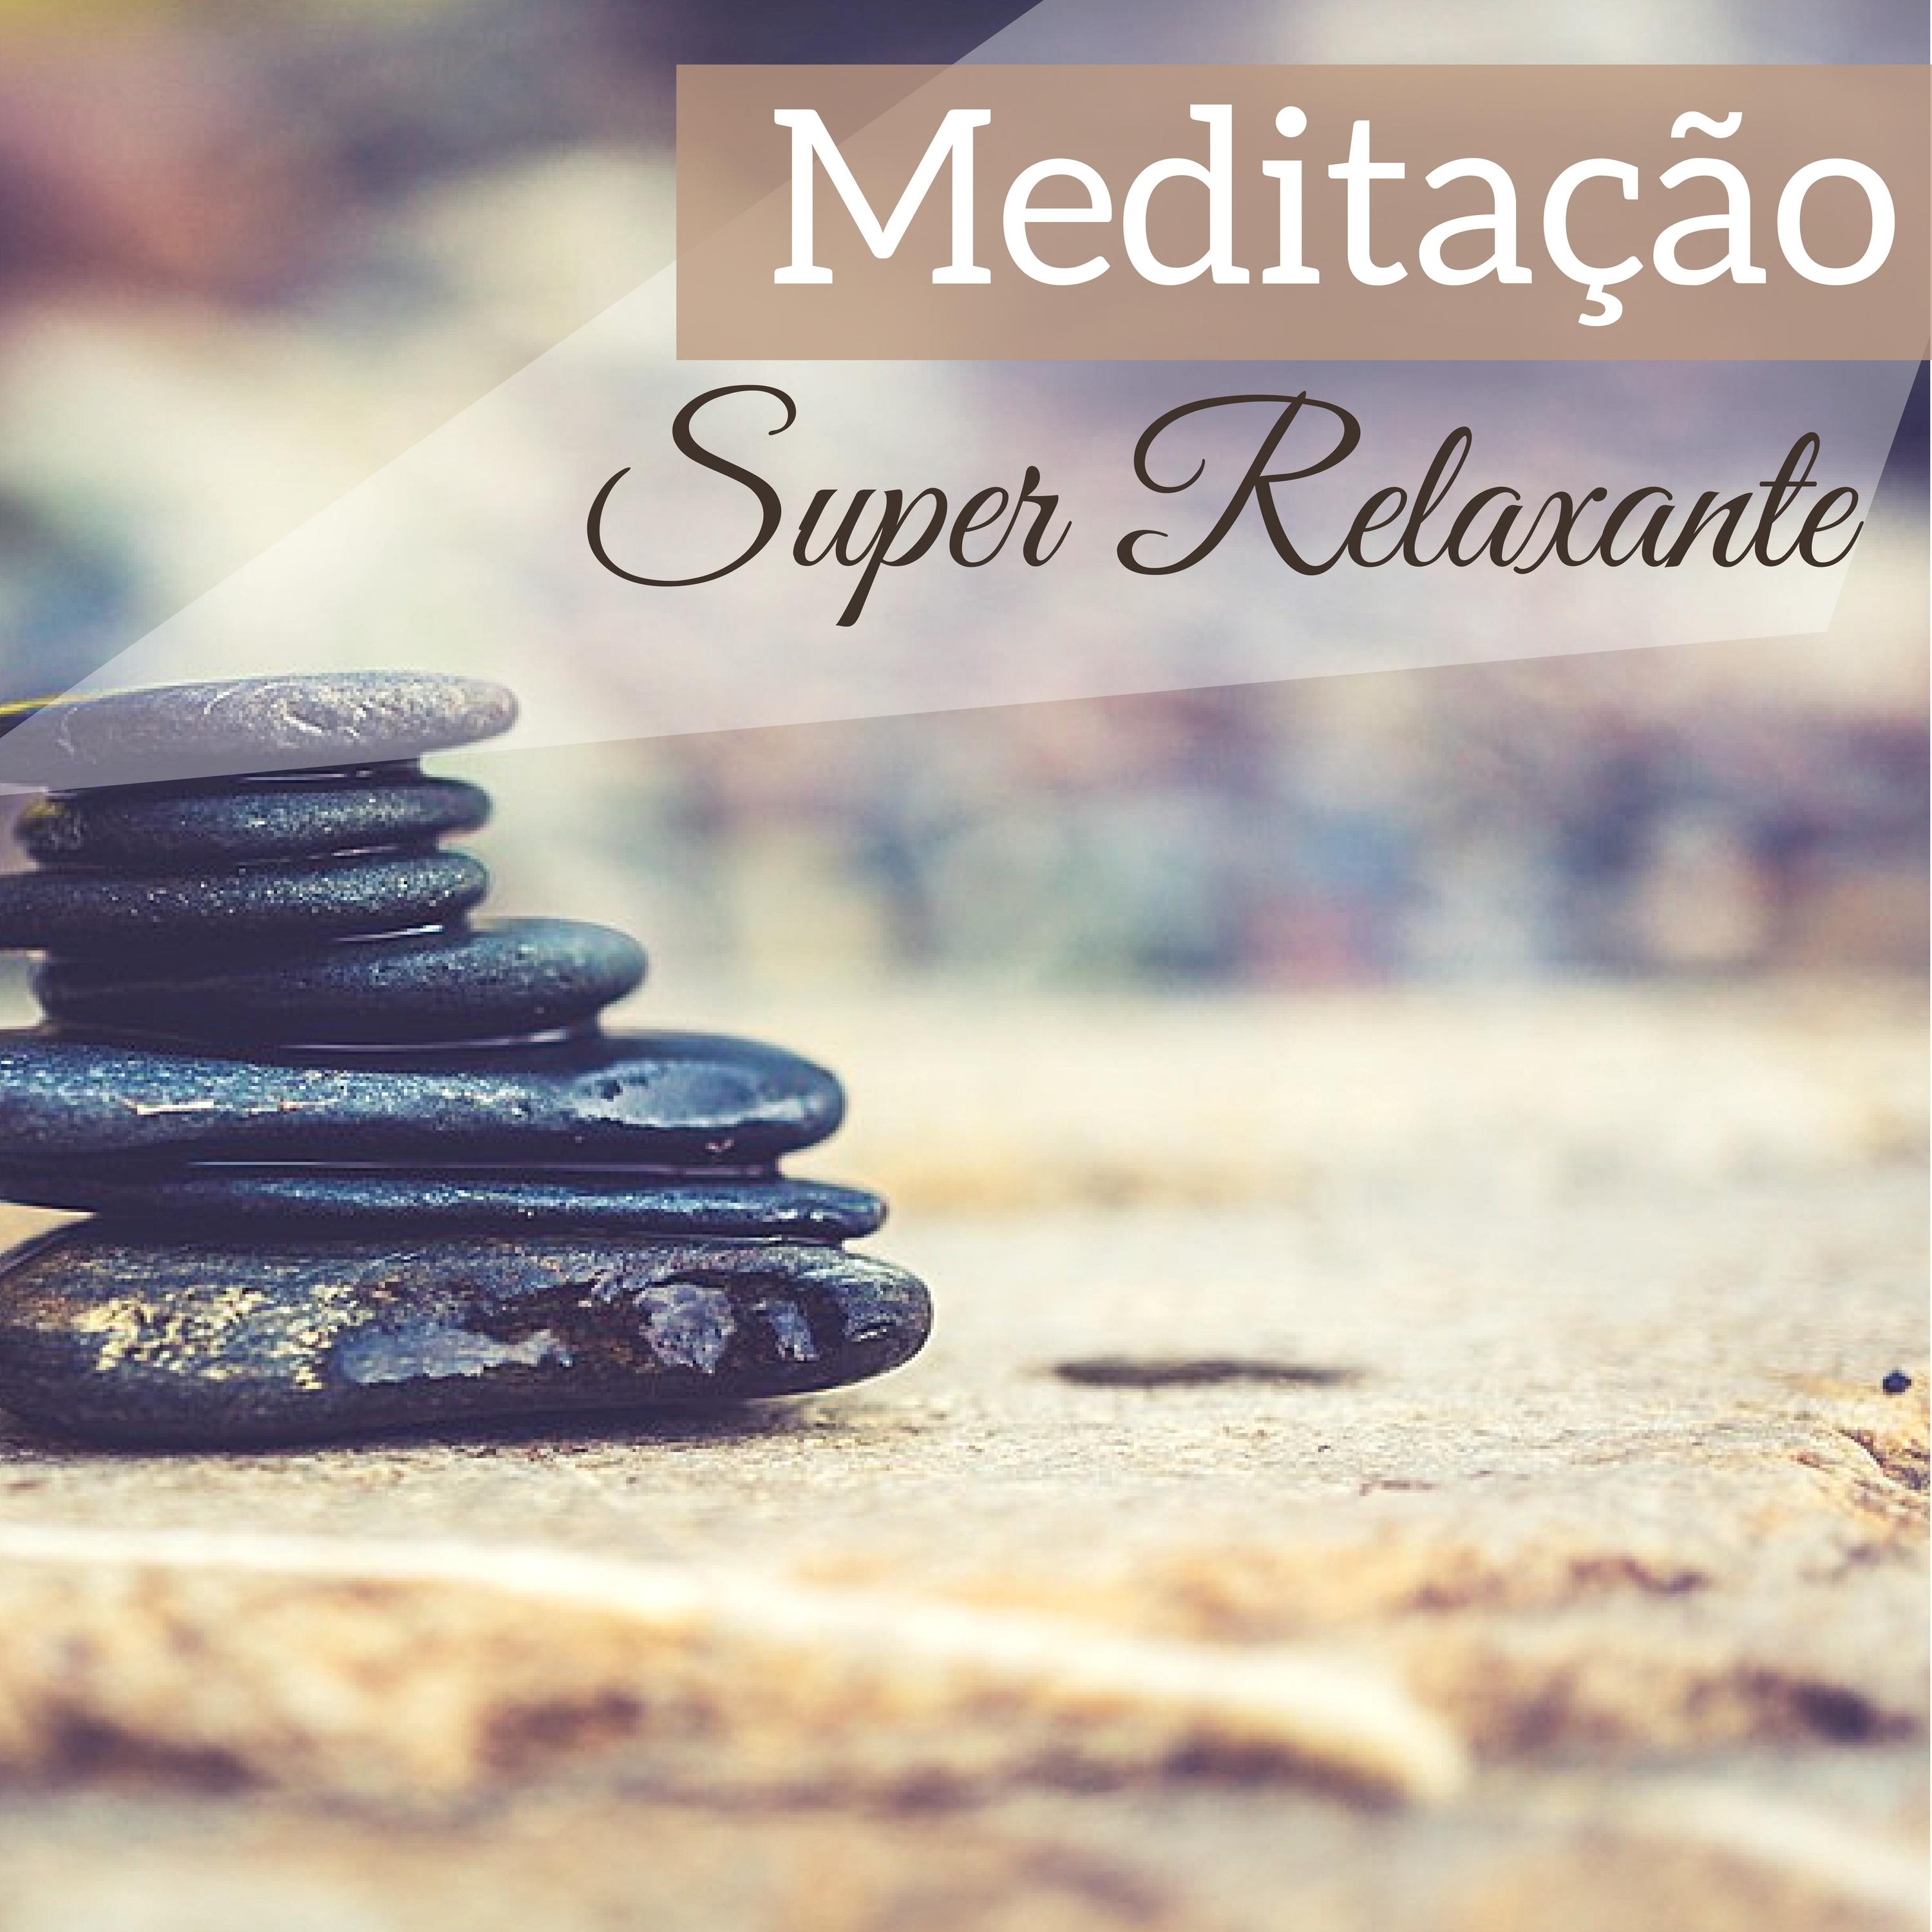 Meditação Super Relaxante - Purificação Espiritual, Bem Estar e Regeneração